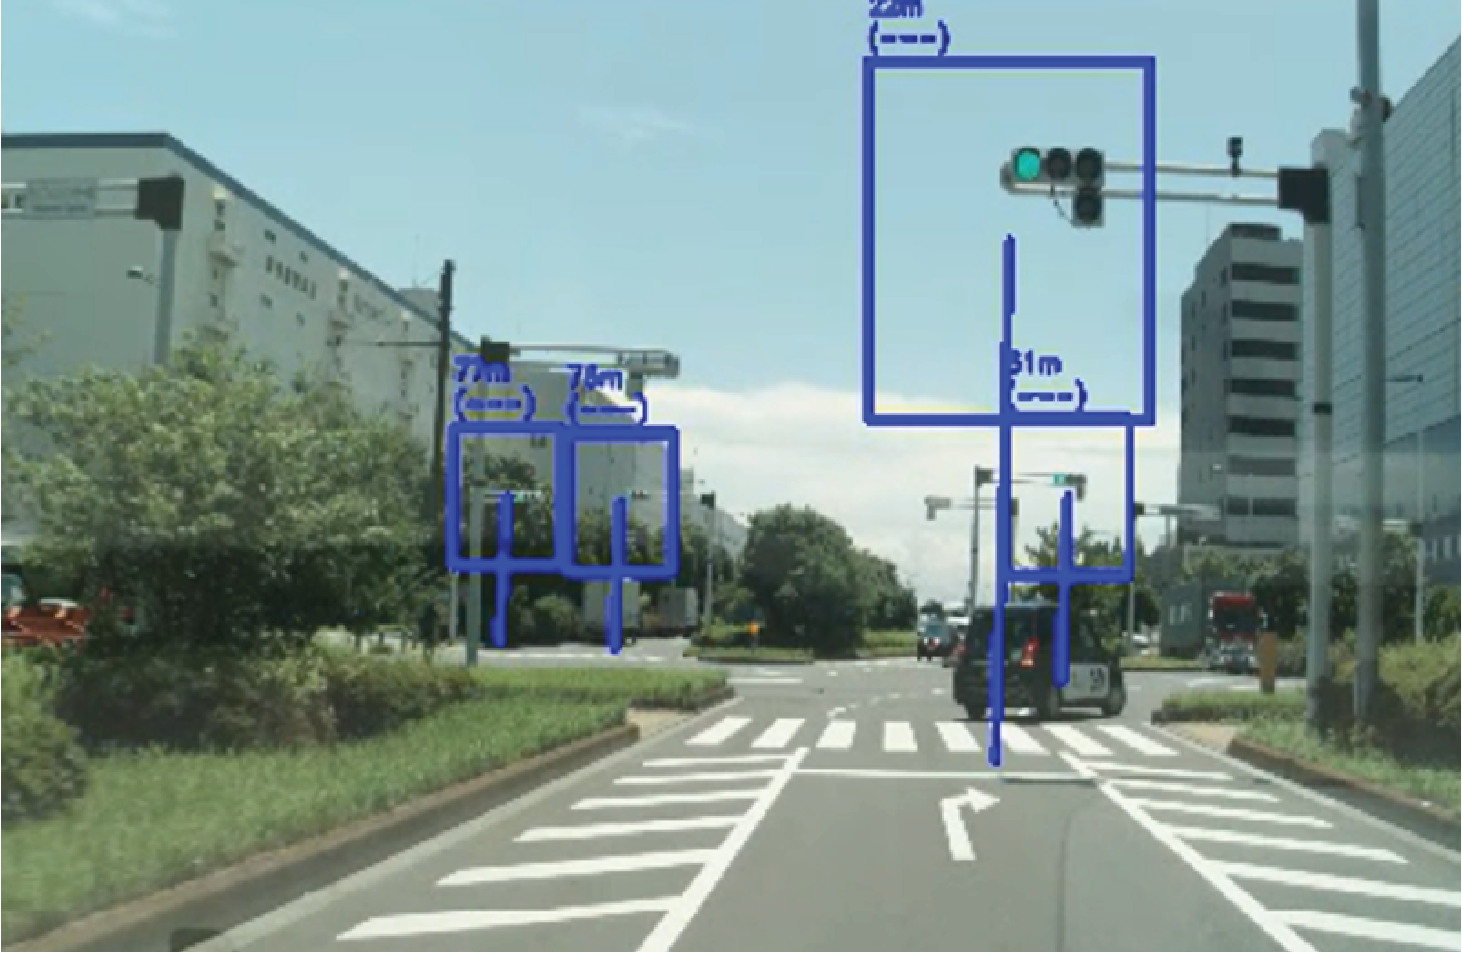 東京臨海部実証実験におけるV2I/V2N/カメラの認識距離の検証例（テレコムセンター前交差点通過時の事例）